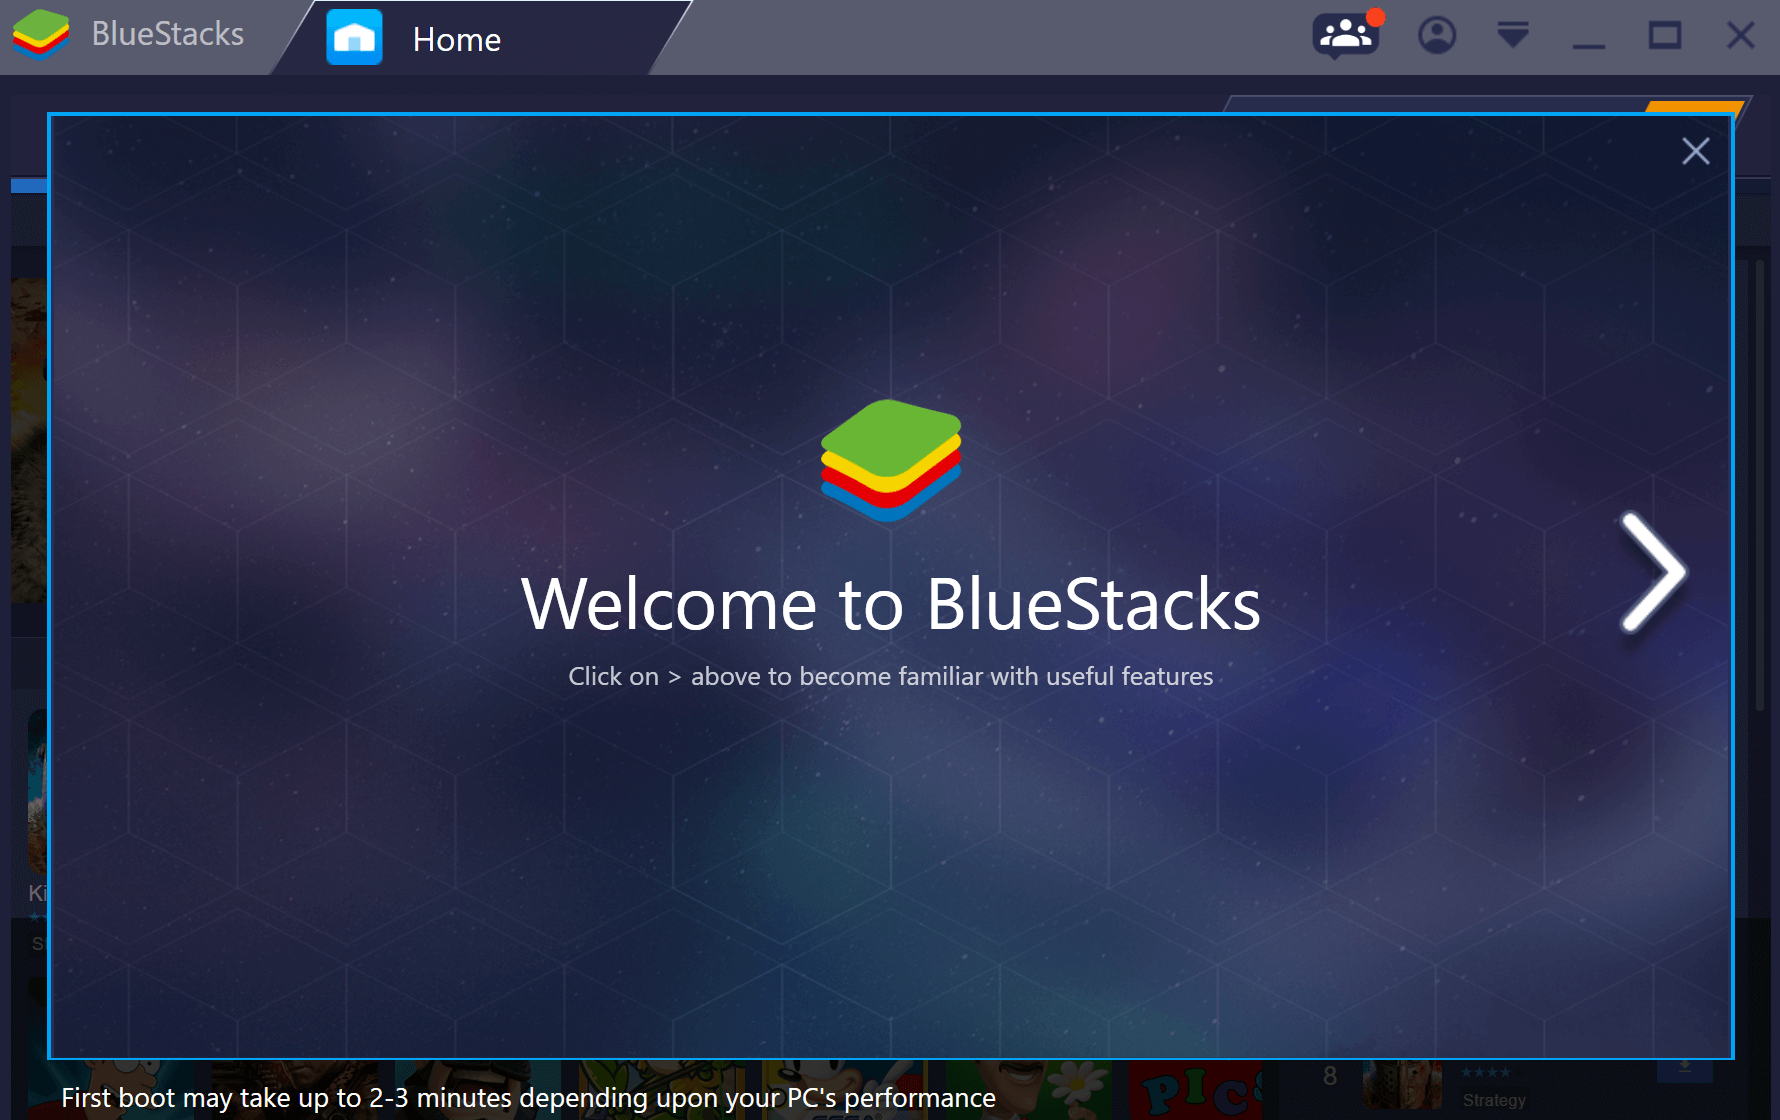 bluestacks 2 for mac release date